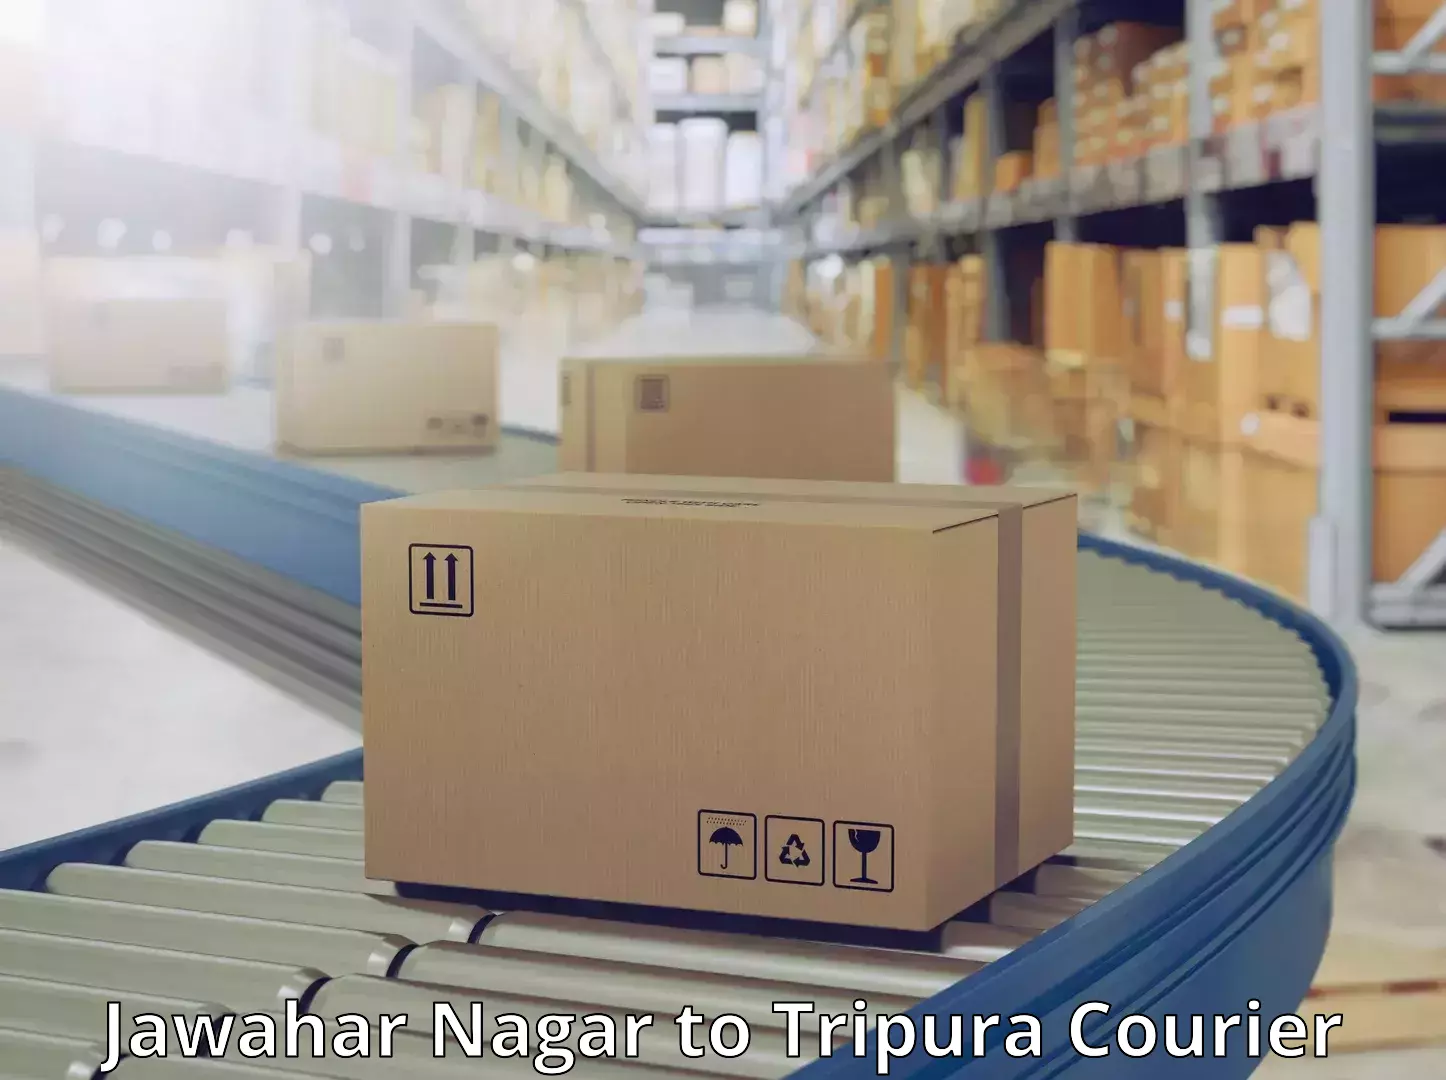 Nationwide shipping coverage Jawahar Nagar to IIIT Agartala